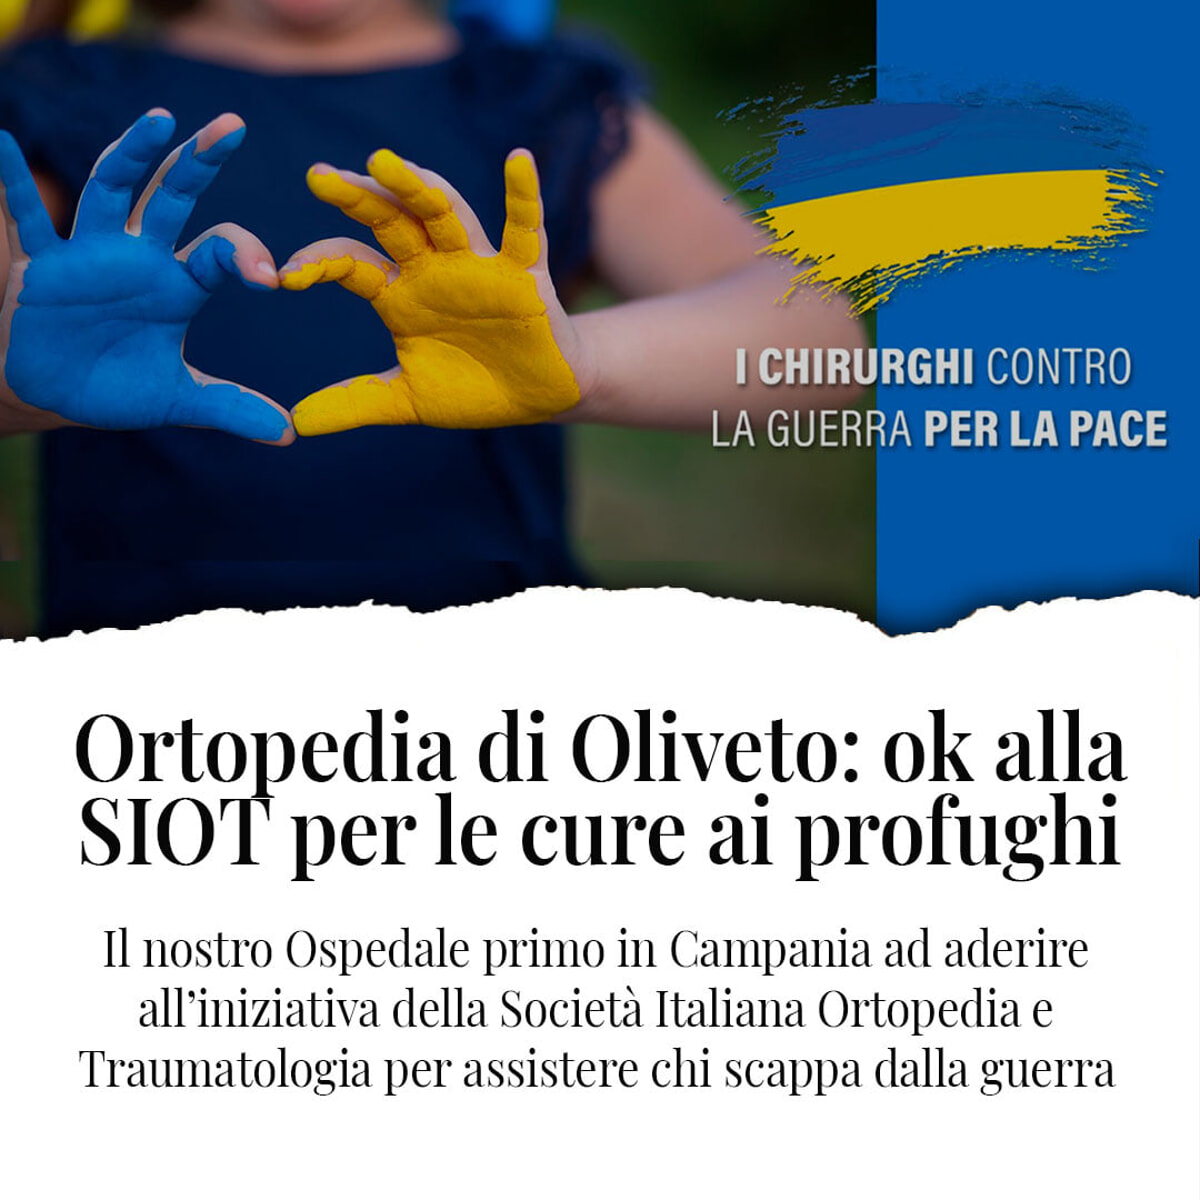 Cure ortopediche per i profughi ucraini: l’ospedale di Oliveto Citra aderisce all’iniziativa solidale di “Siot”